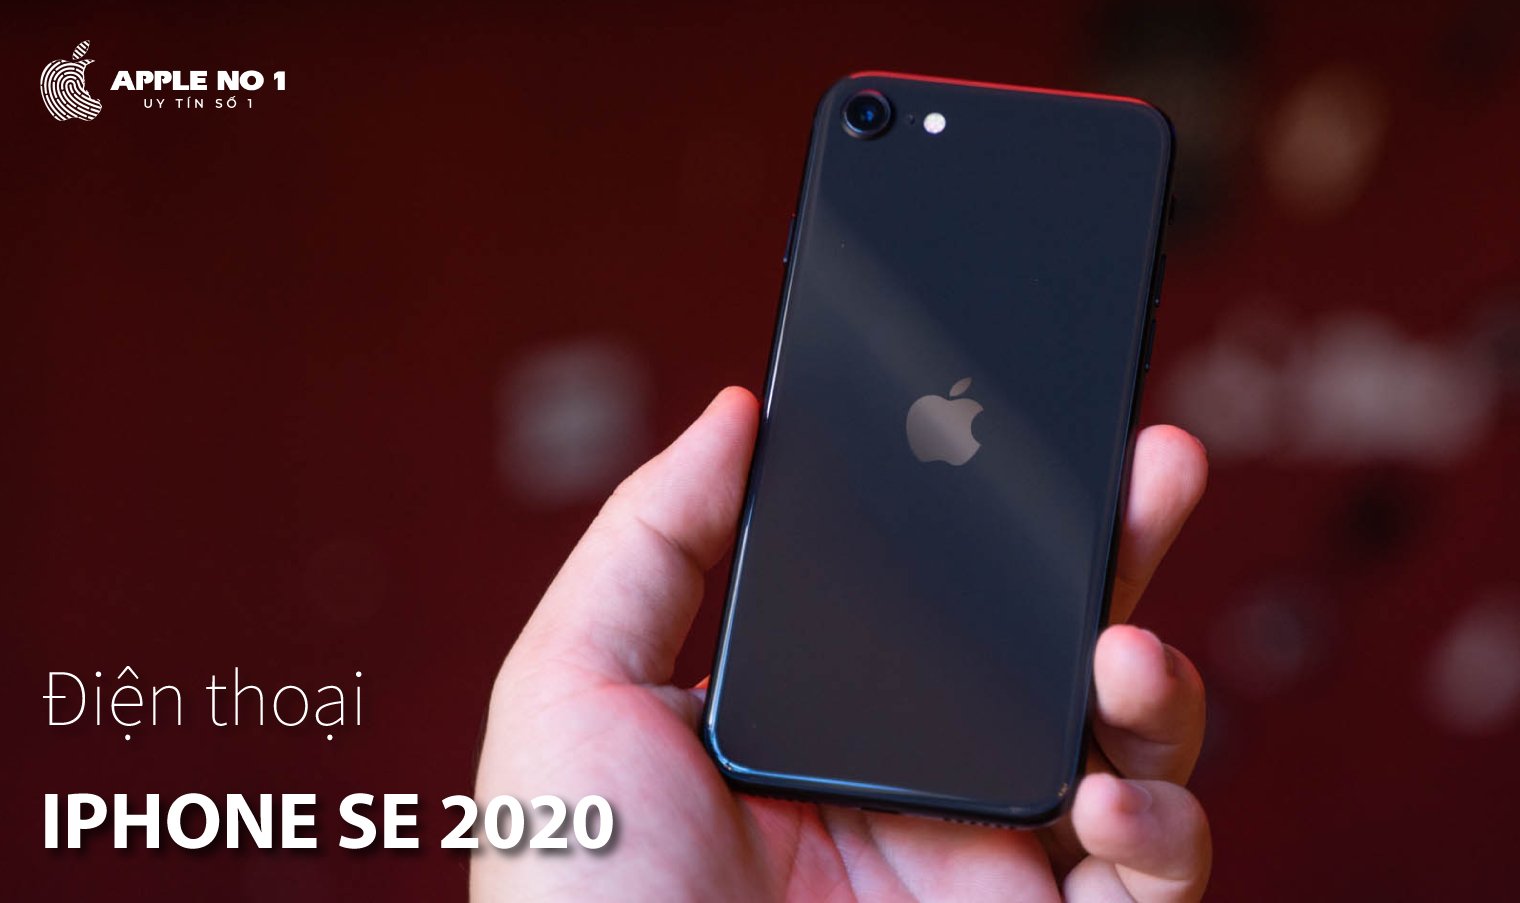 iPhone SE 2020 voi mat lung kinh om sat vien sang trong, tinh te